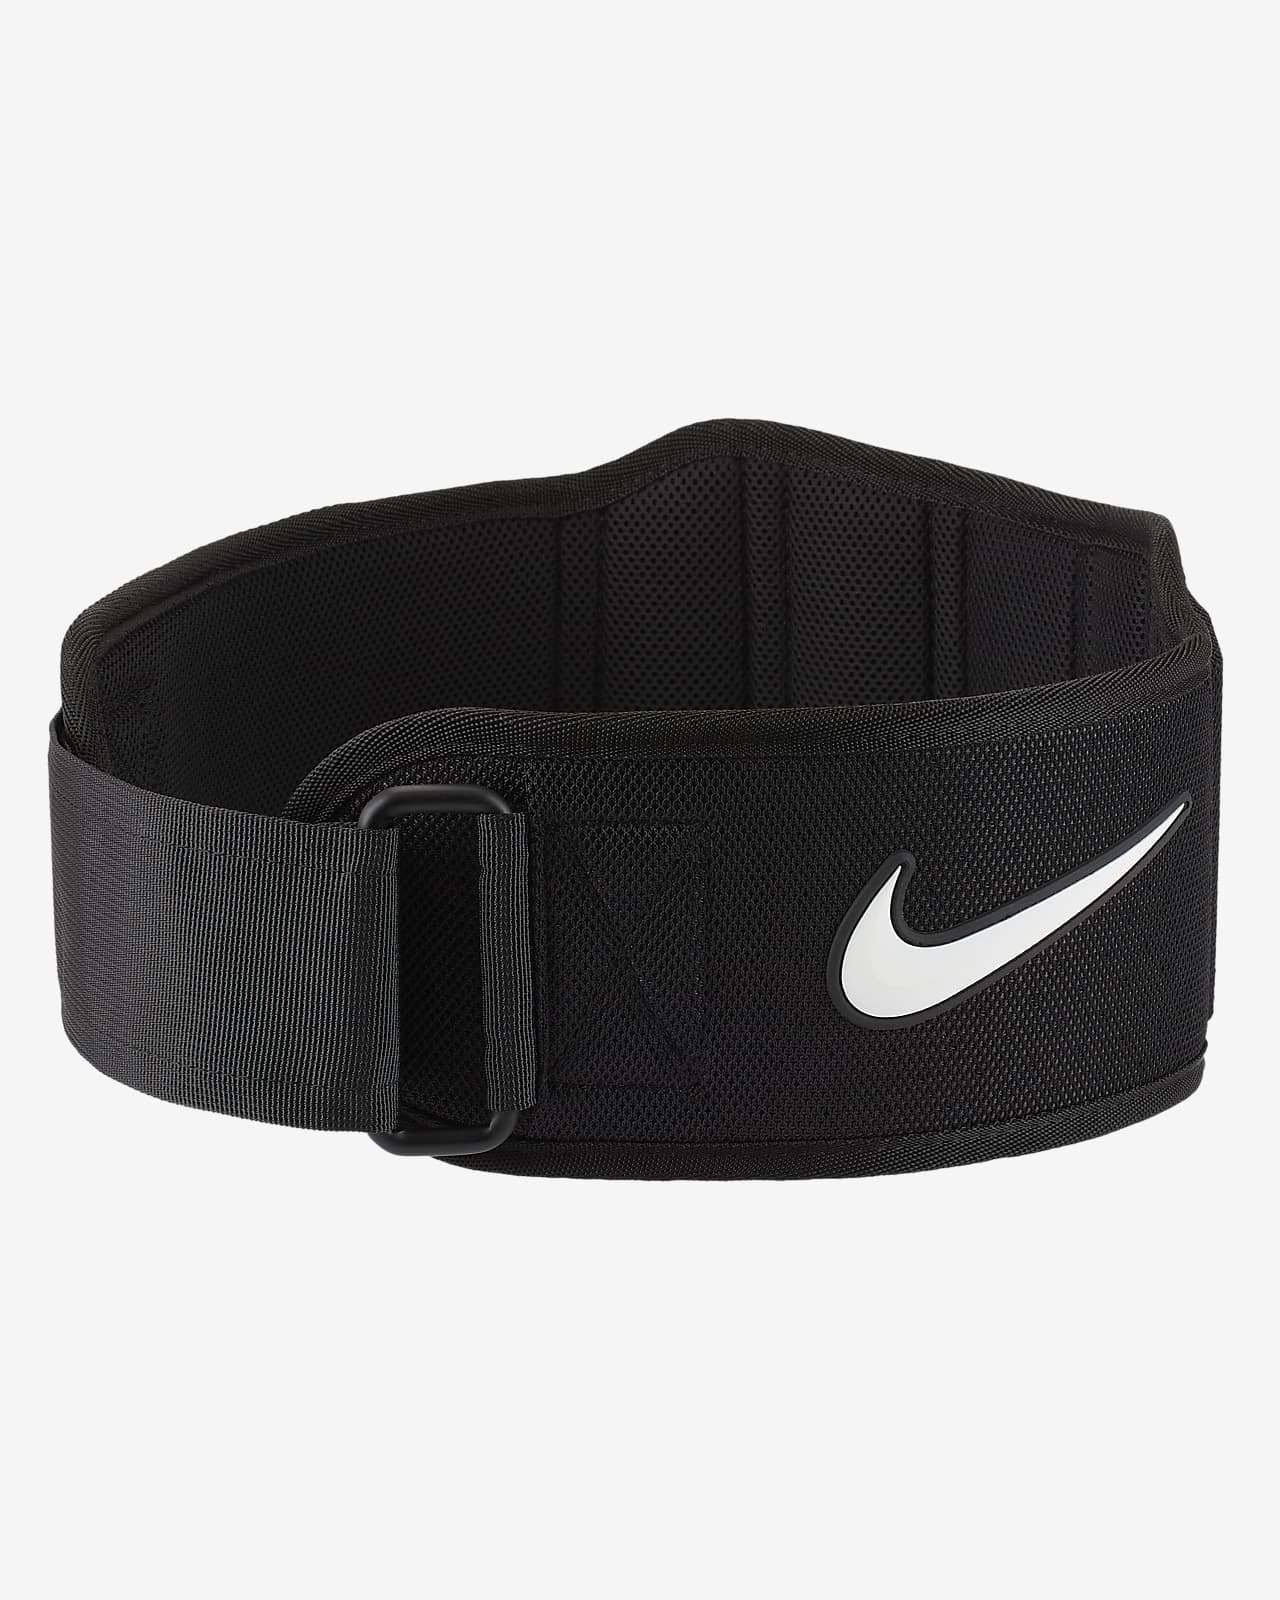 Fondos prefacio Ropa Cinturón de entrenamiento 3.0 Nike Structured. Nike.com